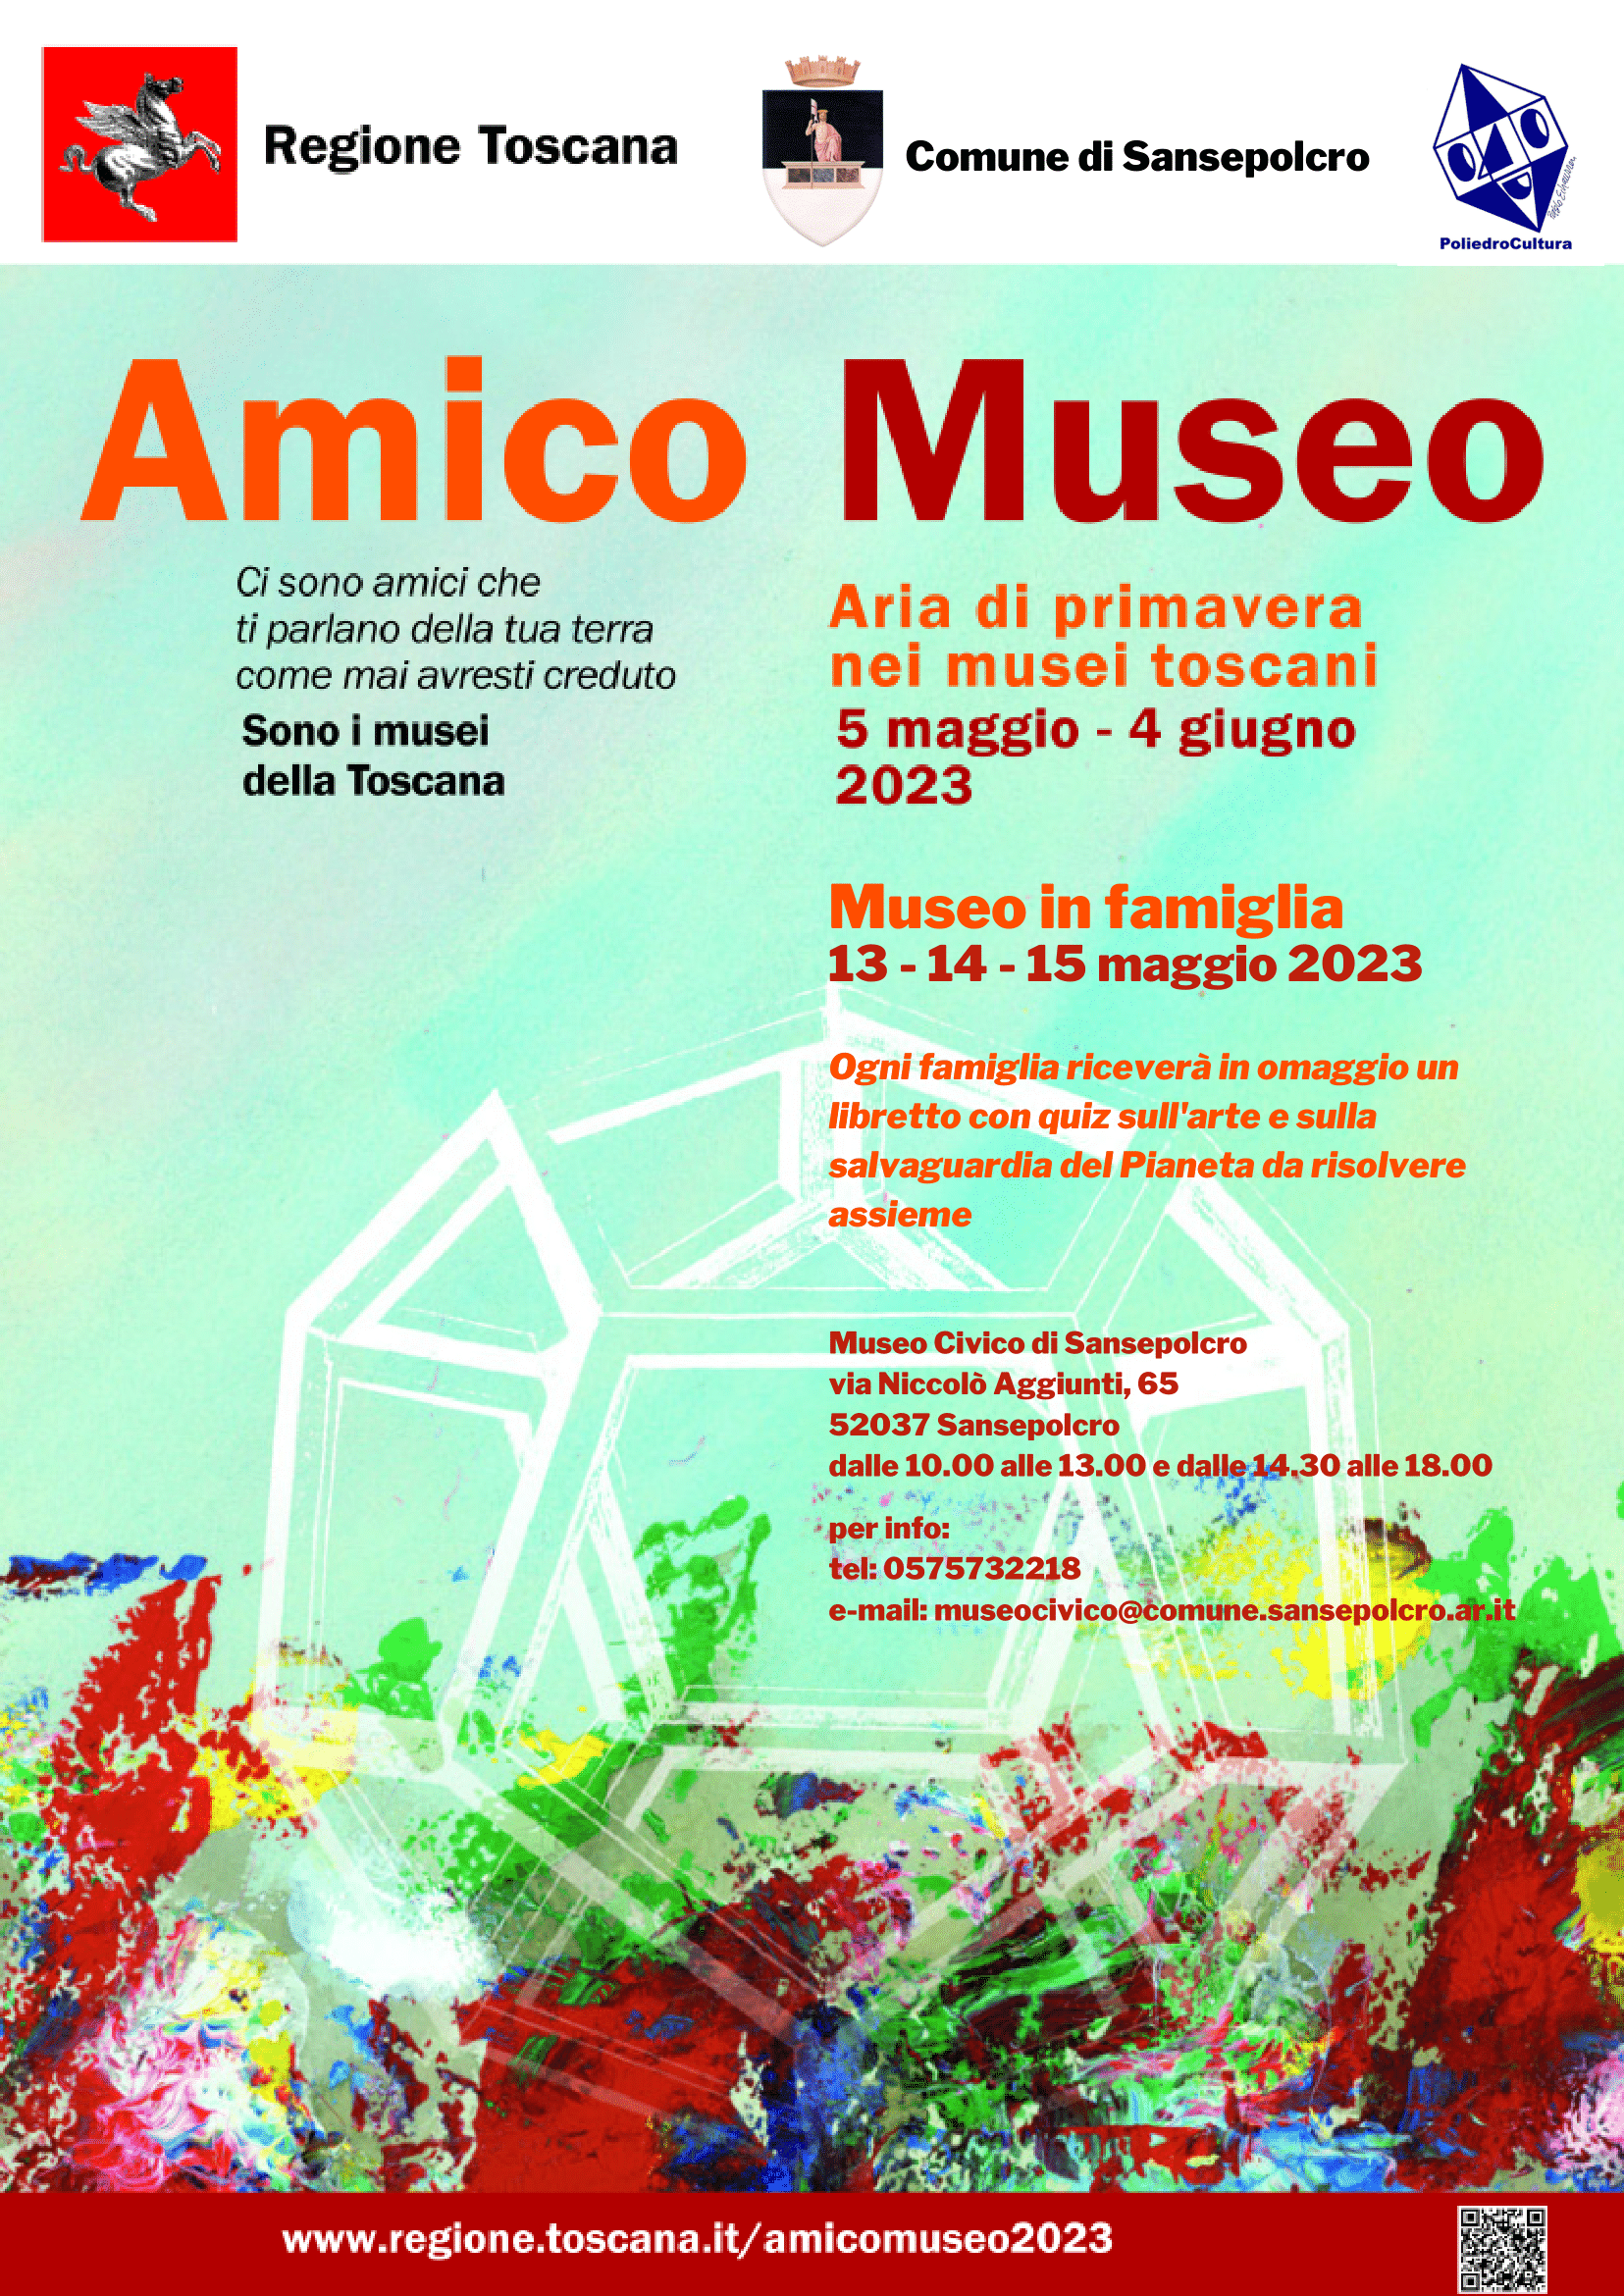 Amico Museo a Sansepolcro, protagonista il Museo Civico